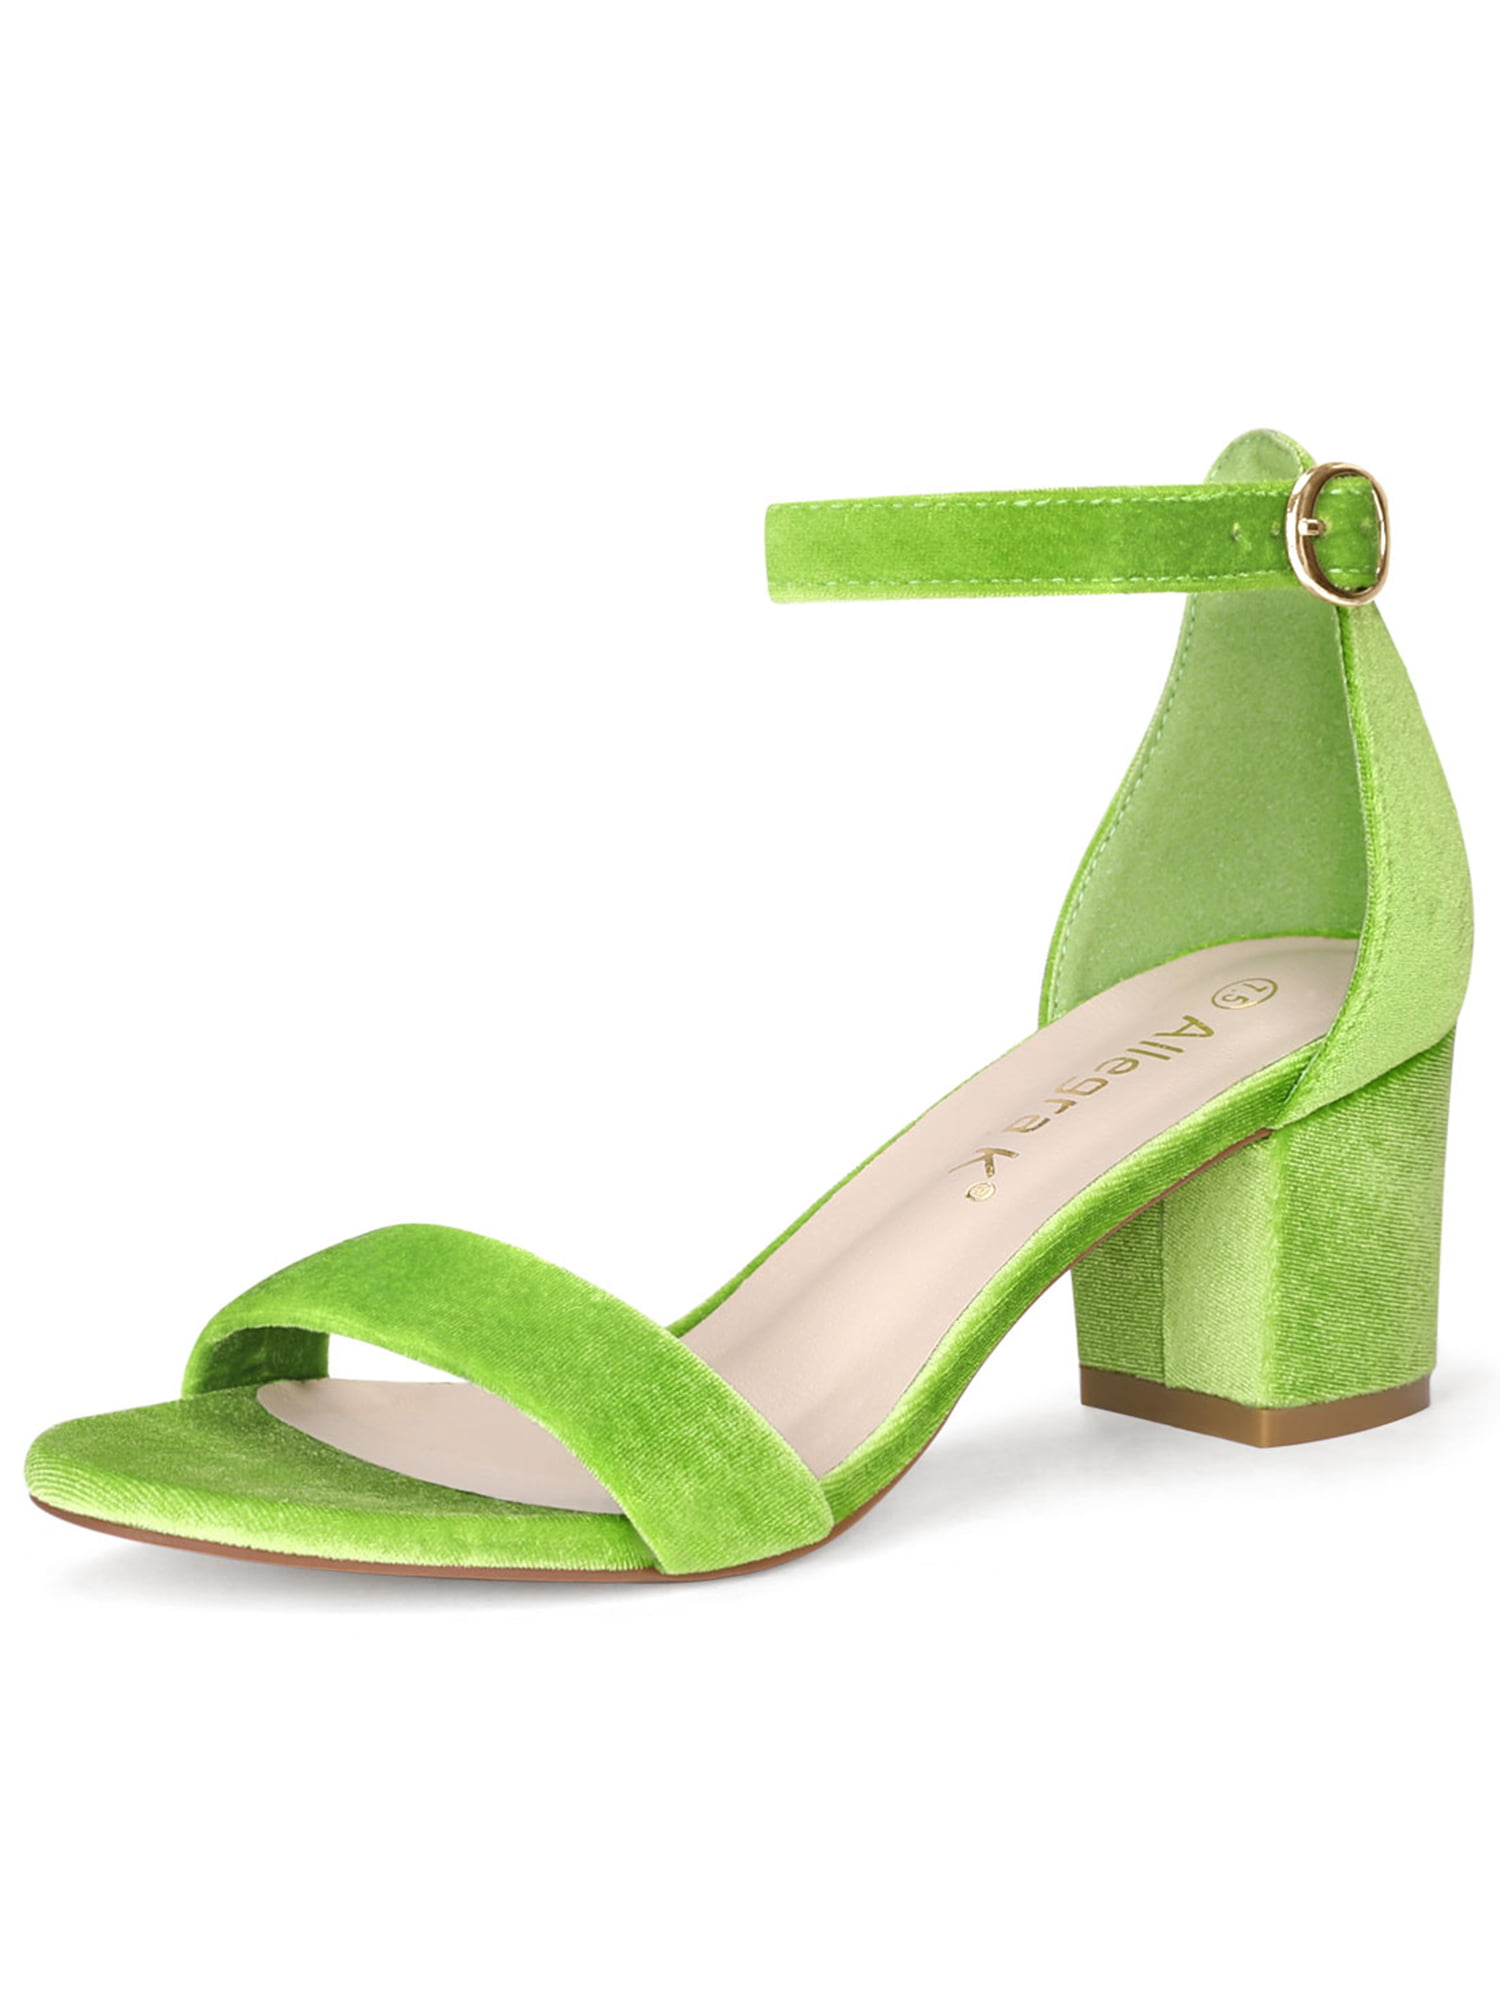 Women Open Toe Mid Block Heel Ankle Strap Sandals Green US 10 | Walmart ...